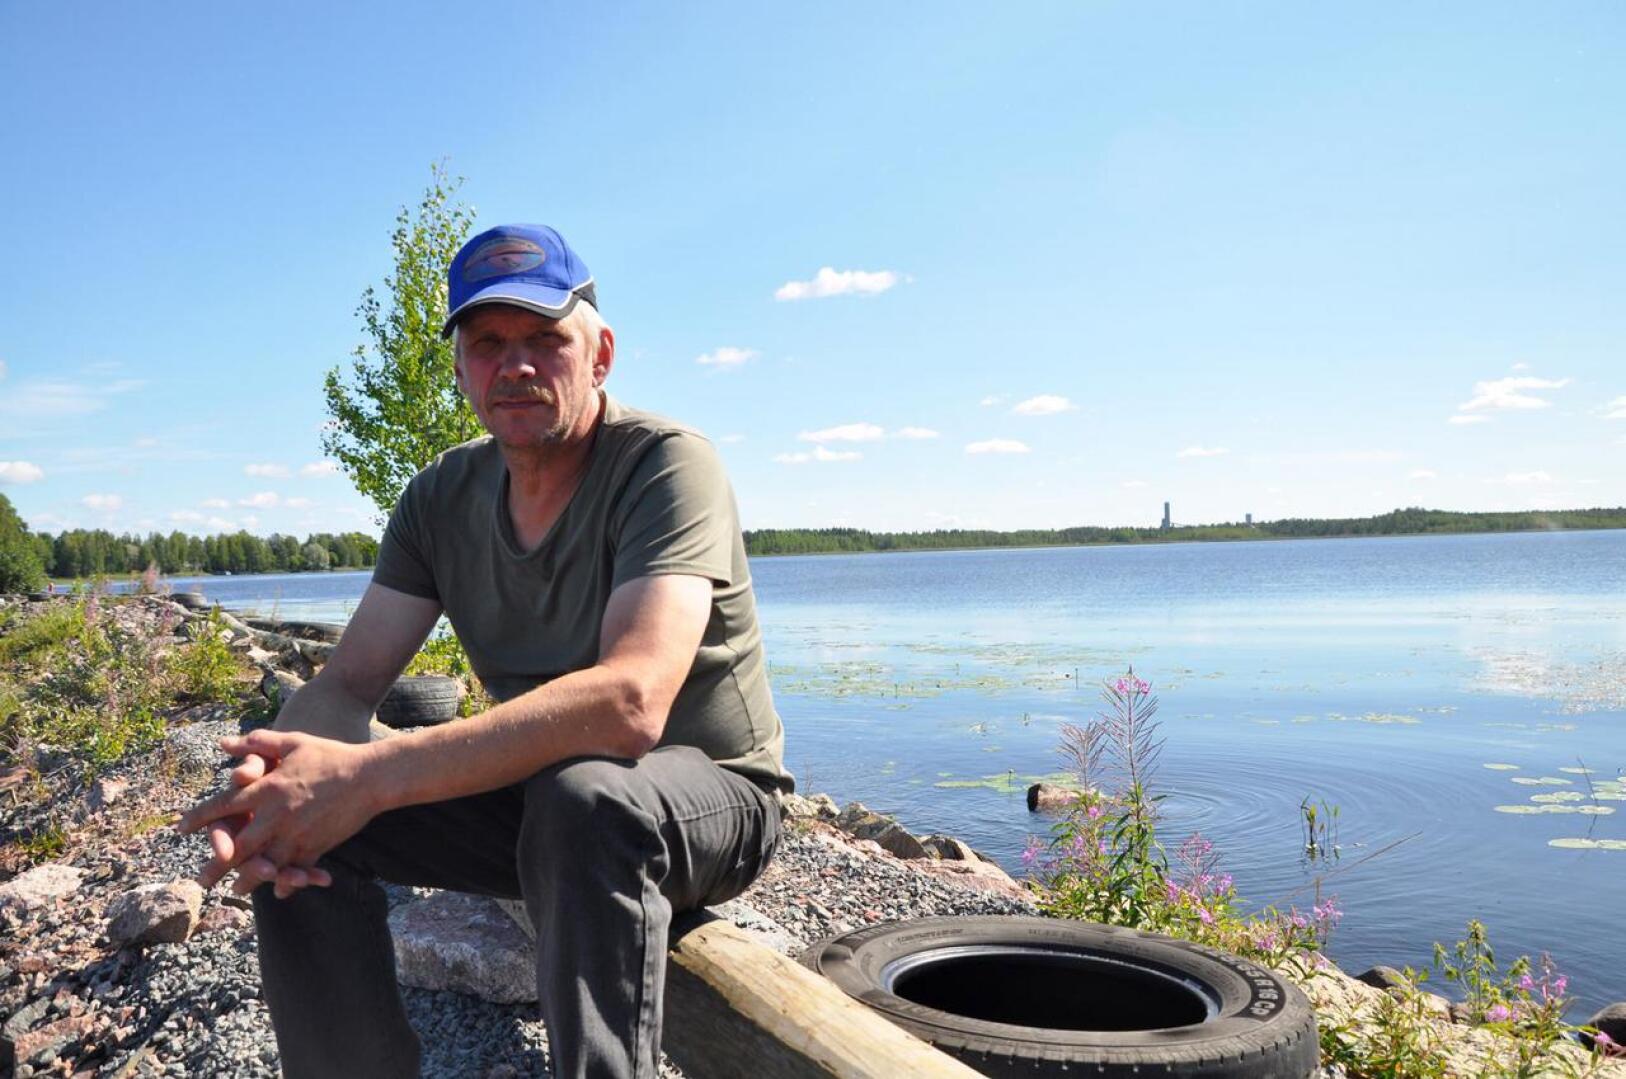 Viimeiset venepaikat varattiin alkuviikolla hotellin rannasta, kertoo kilpailujohtaja Tuomo Hakala. Vetouistelukilpailut näkyvät Pyhäjärvellä koko viikonlopun ja venekuntia on majoituksessa ympäri järven.